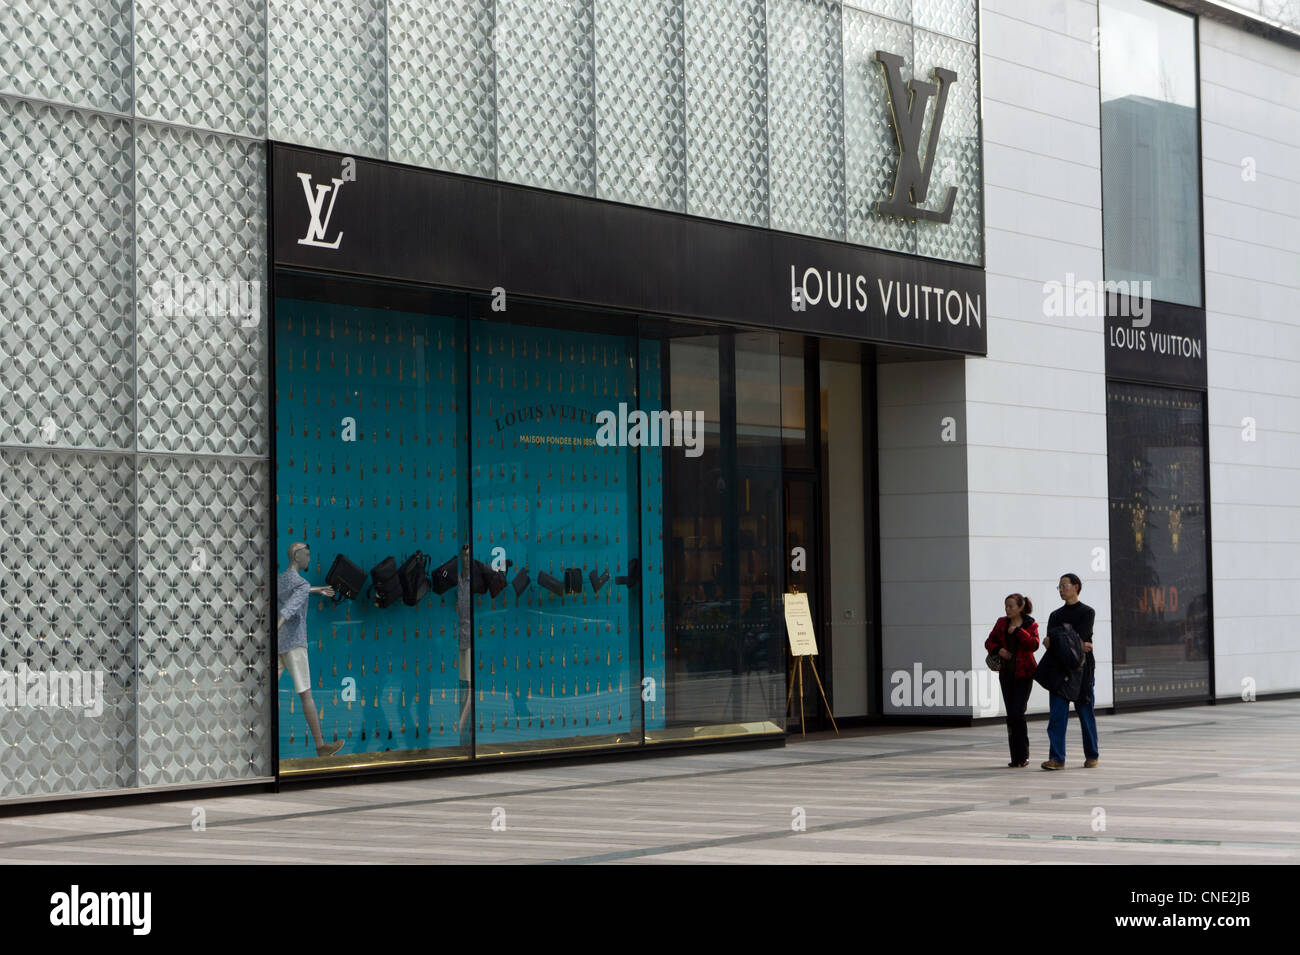 Louis Vuitton shop in Chengdu, China Stock Photo